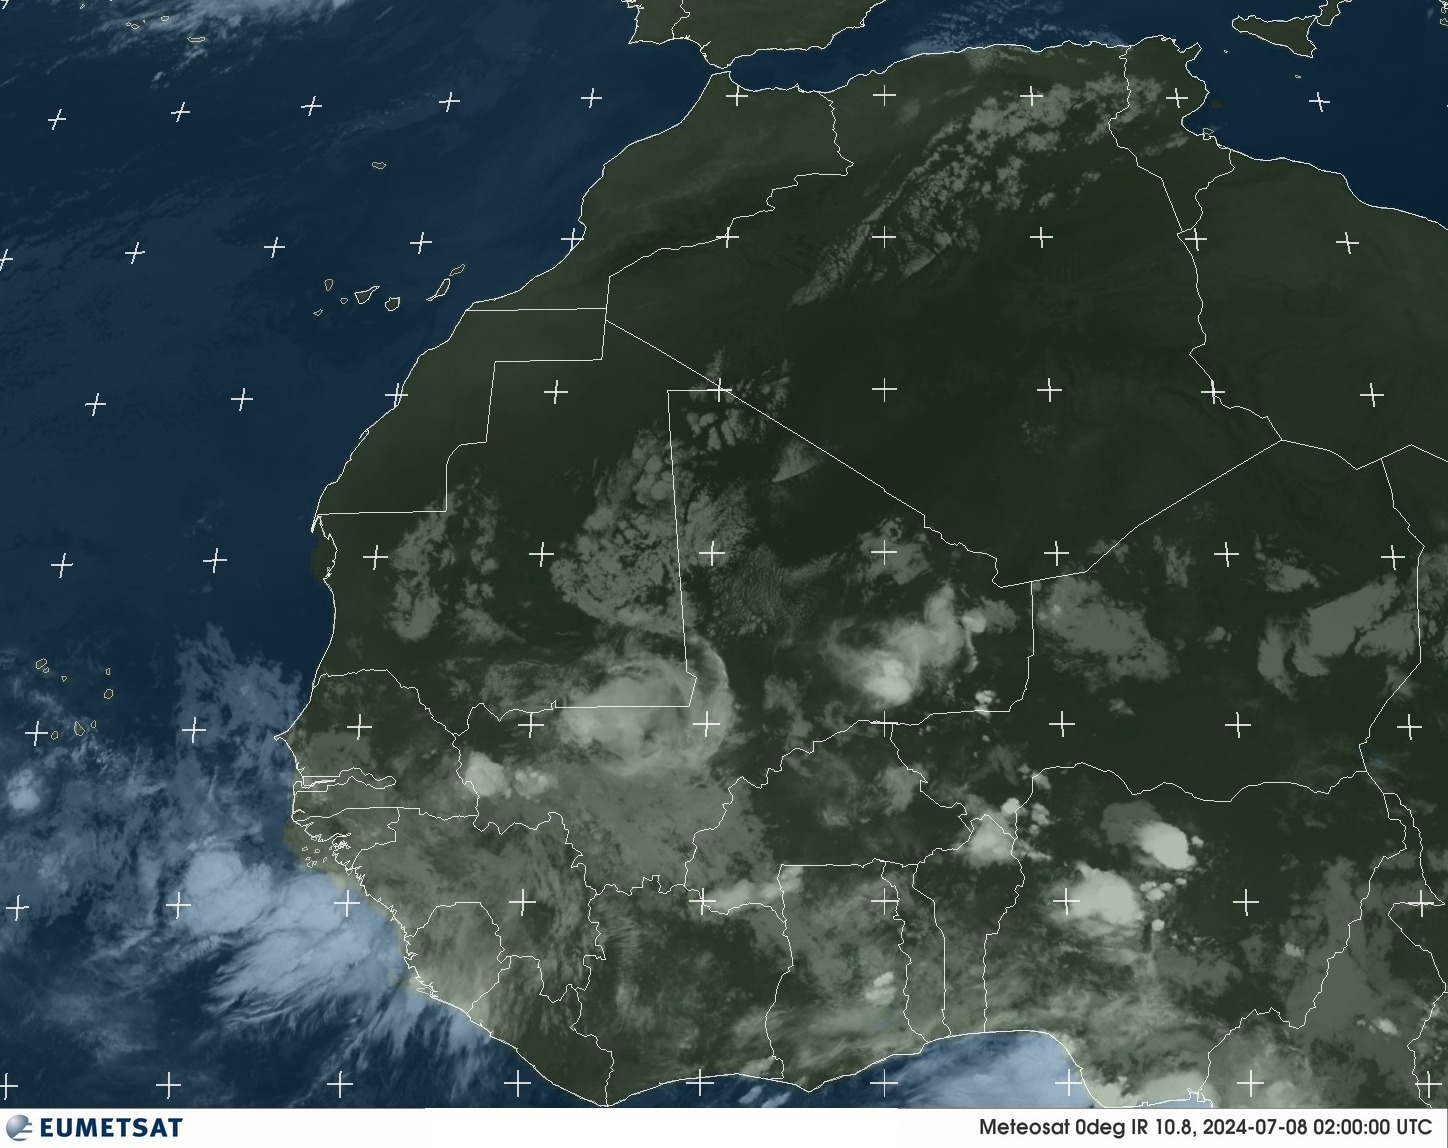 Satellite - Gulf of Guinea - Mo, 08 Jul, 04:00 BST